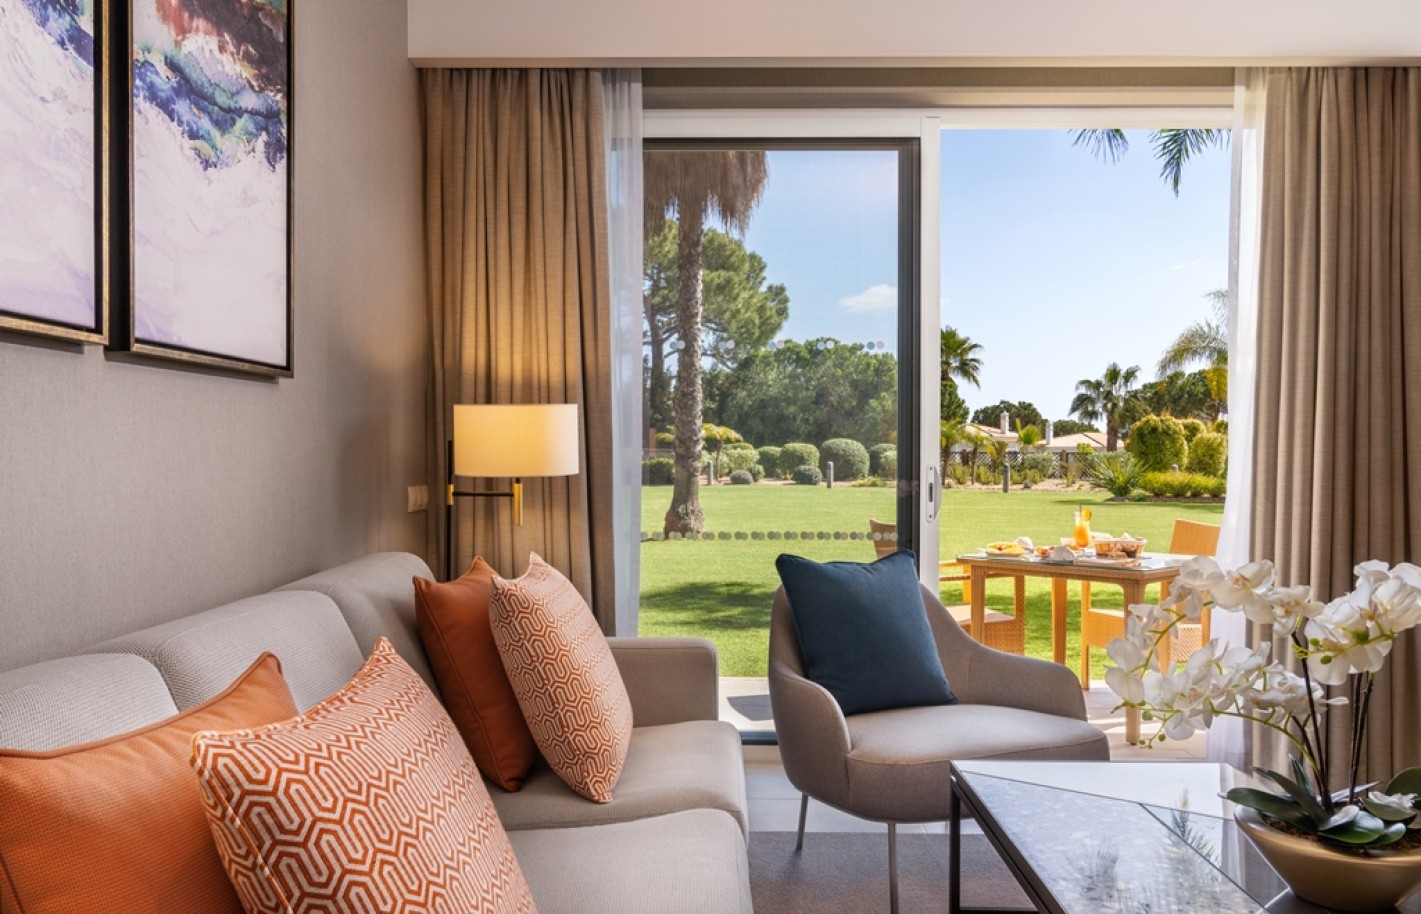 Apartamento, 2 quartos, piscina, para venda na Quinta do Lago, Algarve_263395